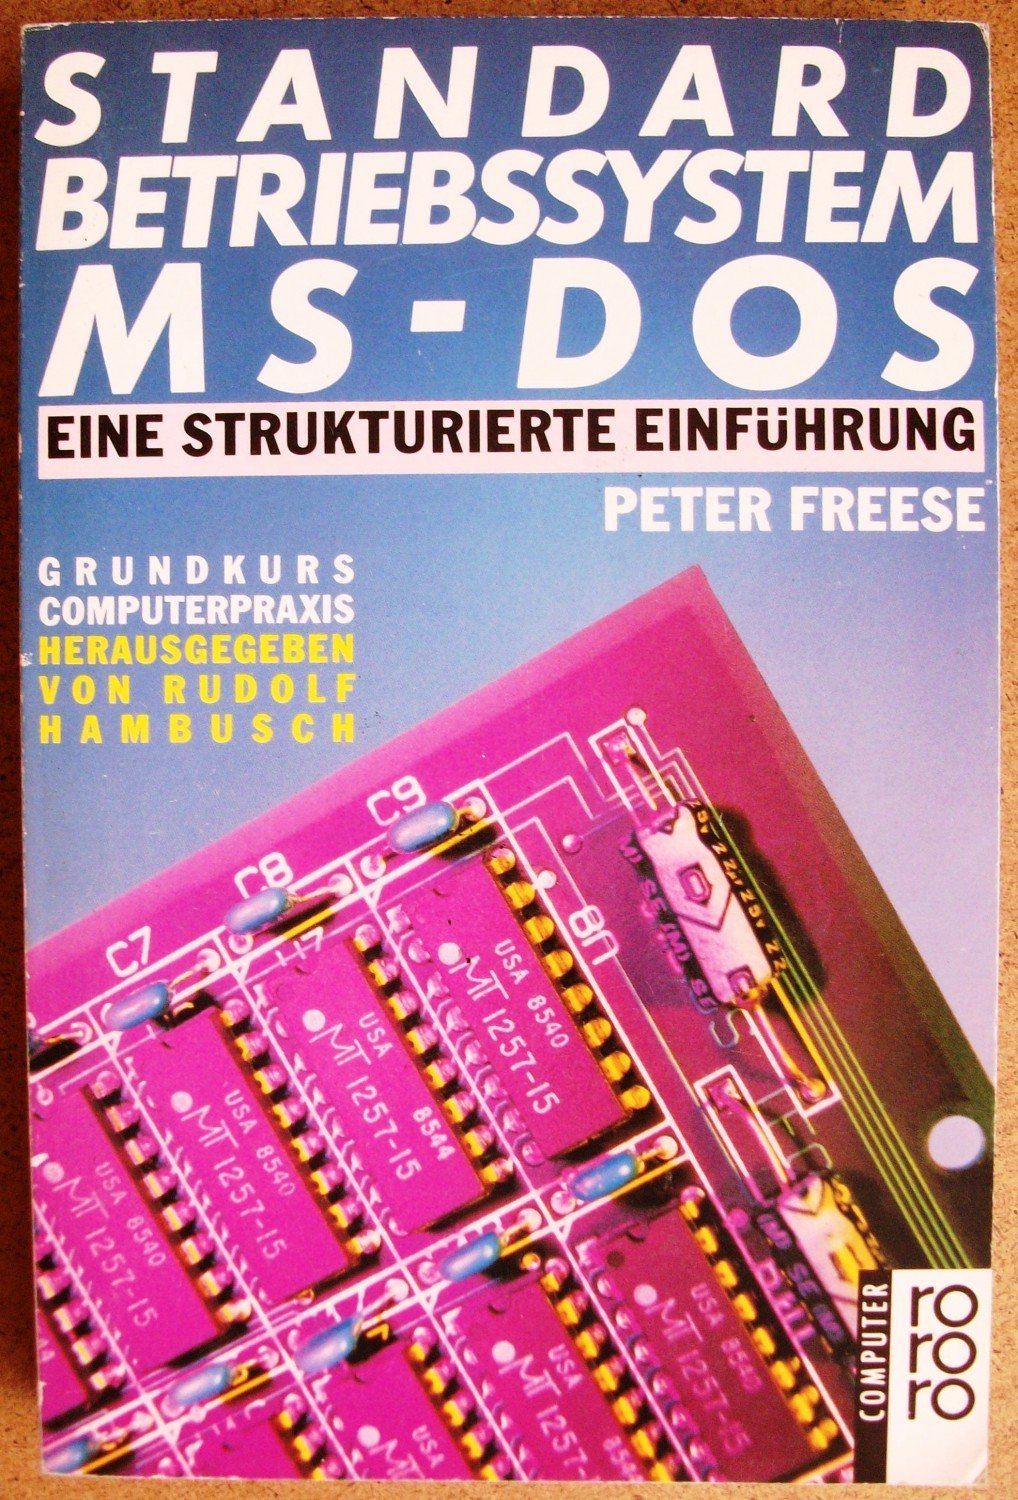 Standard Betriebssystem Ms Dos Eine Strukturierte Einführung Grundkurs Computerpraxis - 